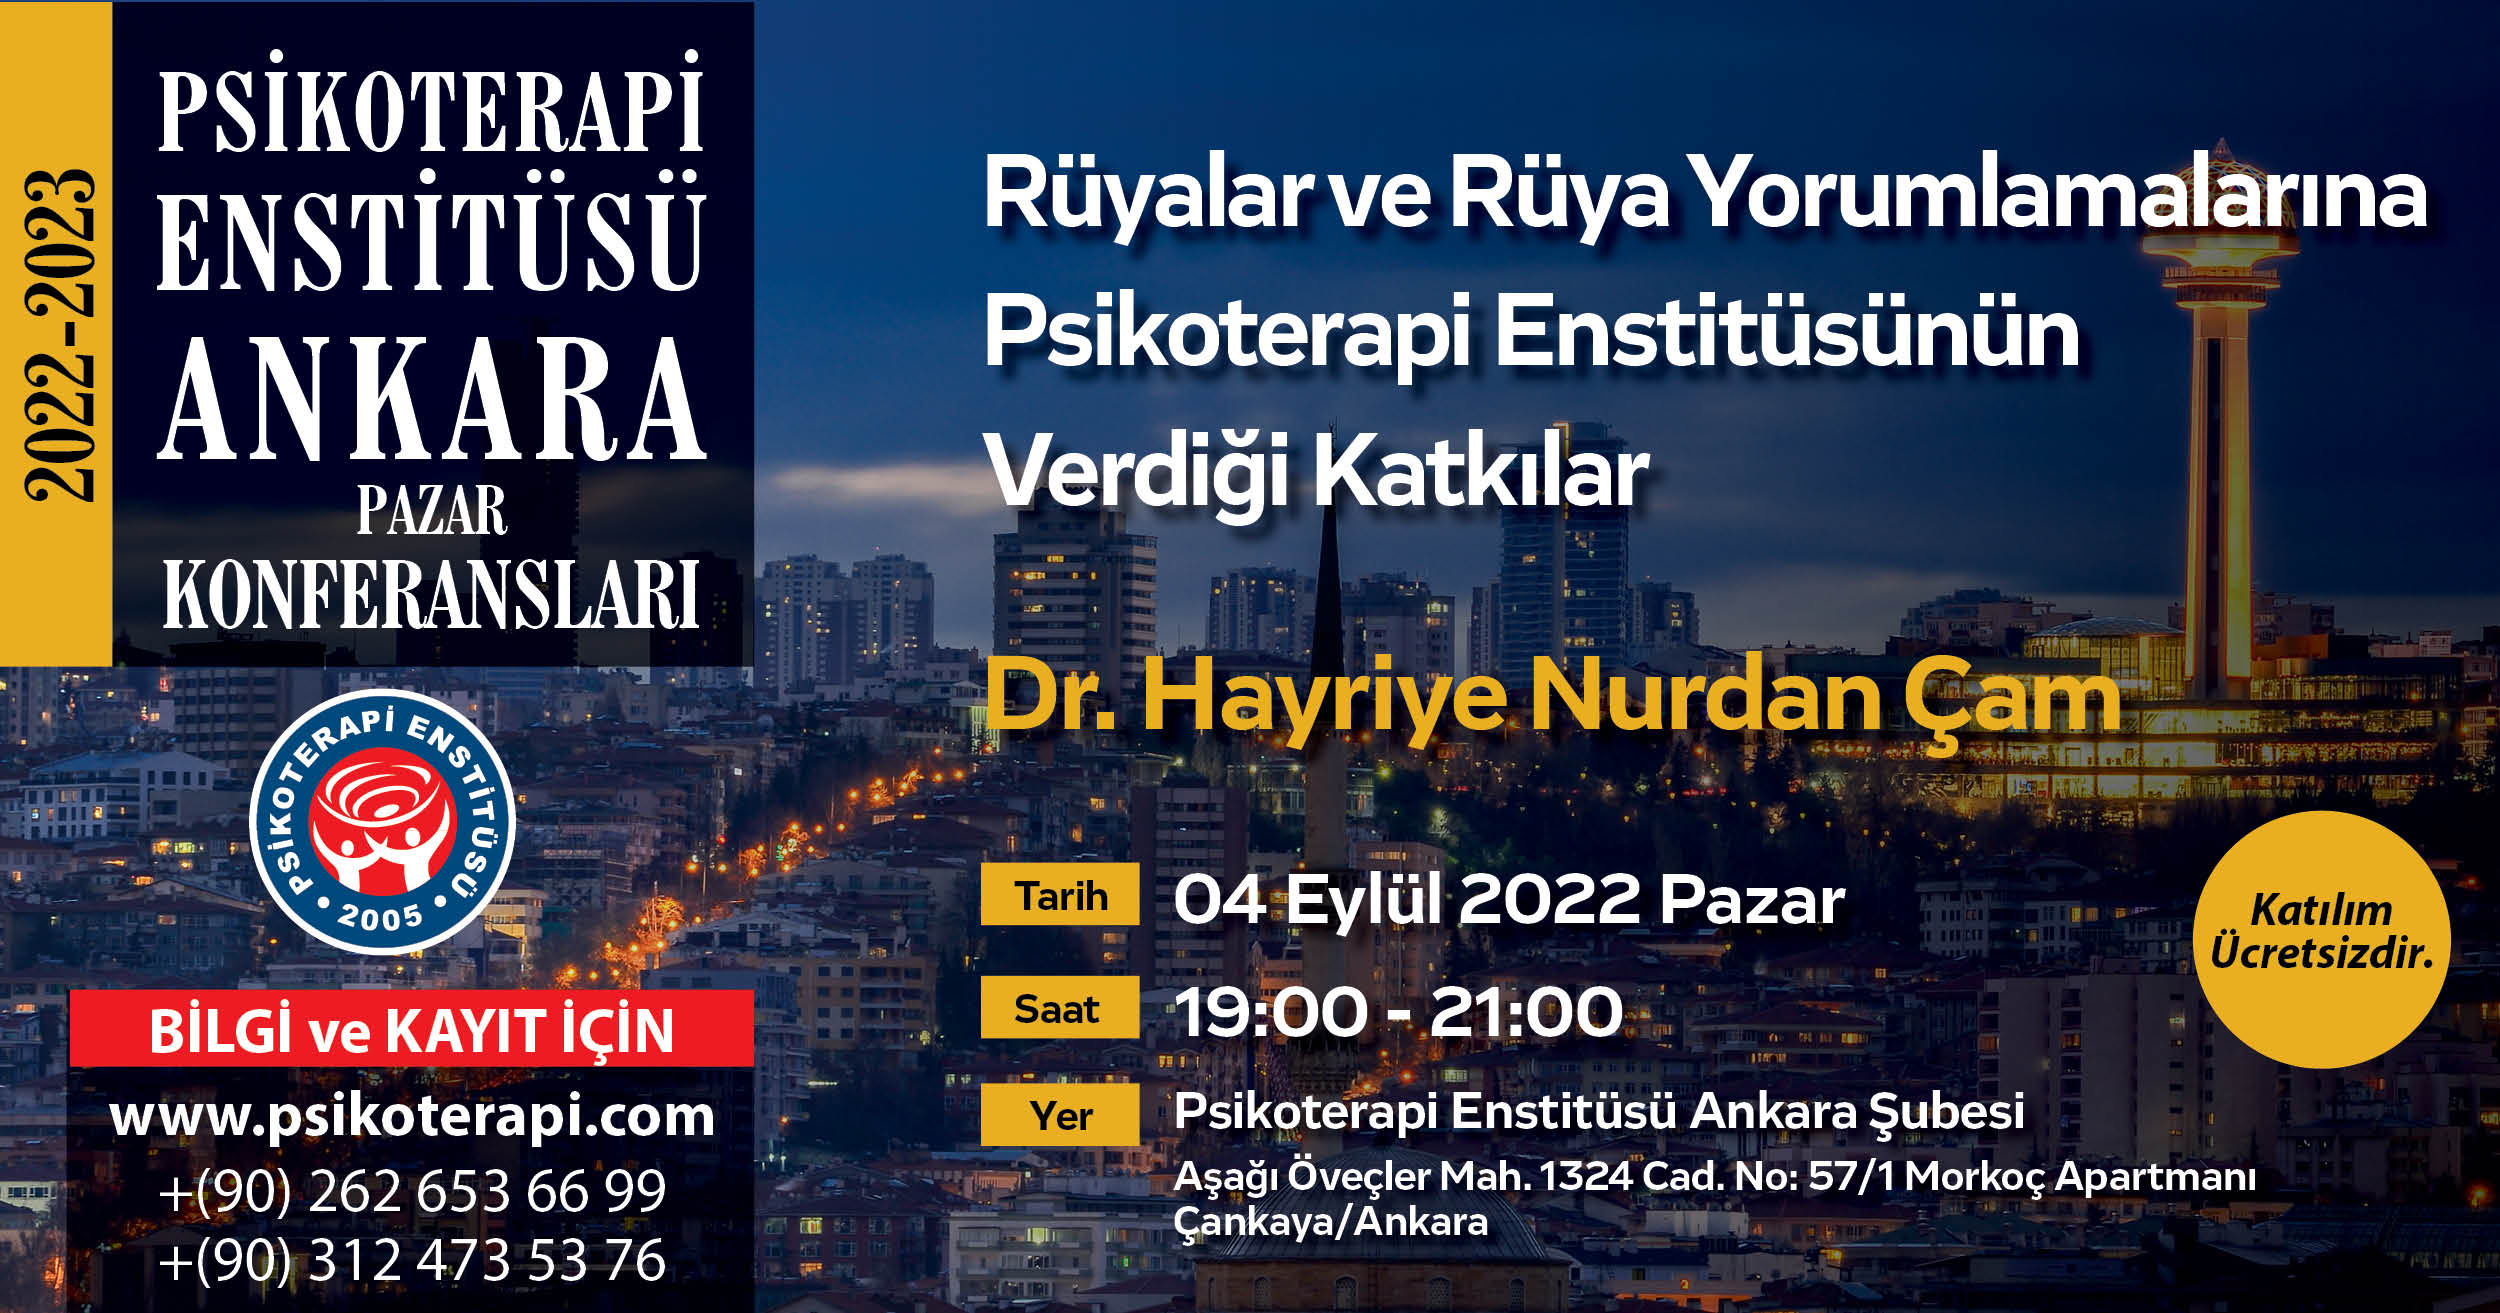 Dr. Hayriye Nurdan Çam- "Rüyalar ve Rüya Yorumlamalarına Psikoterapi Enstitüsünün Verdiği Katkılar"